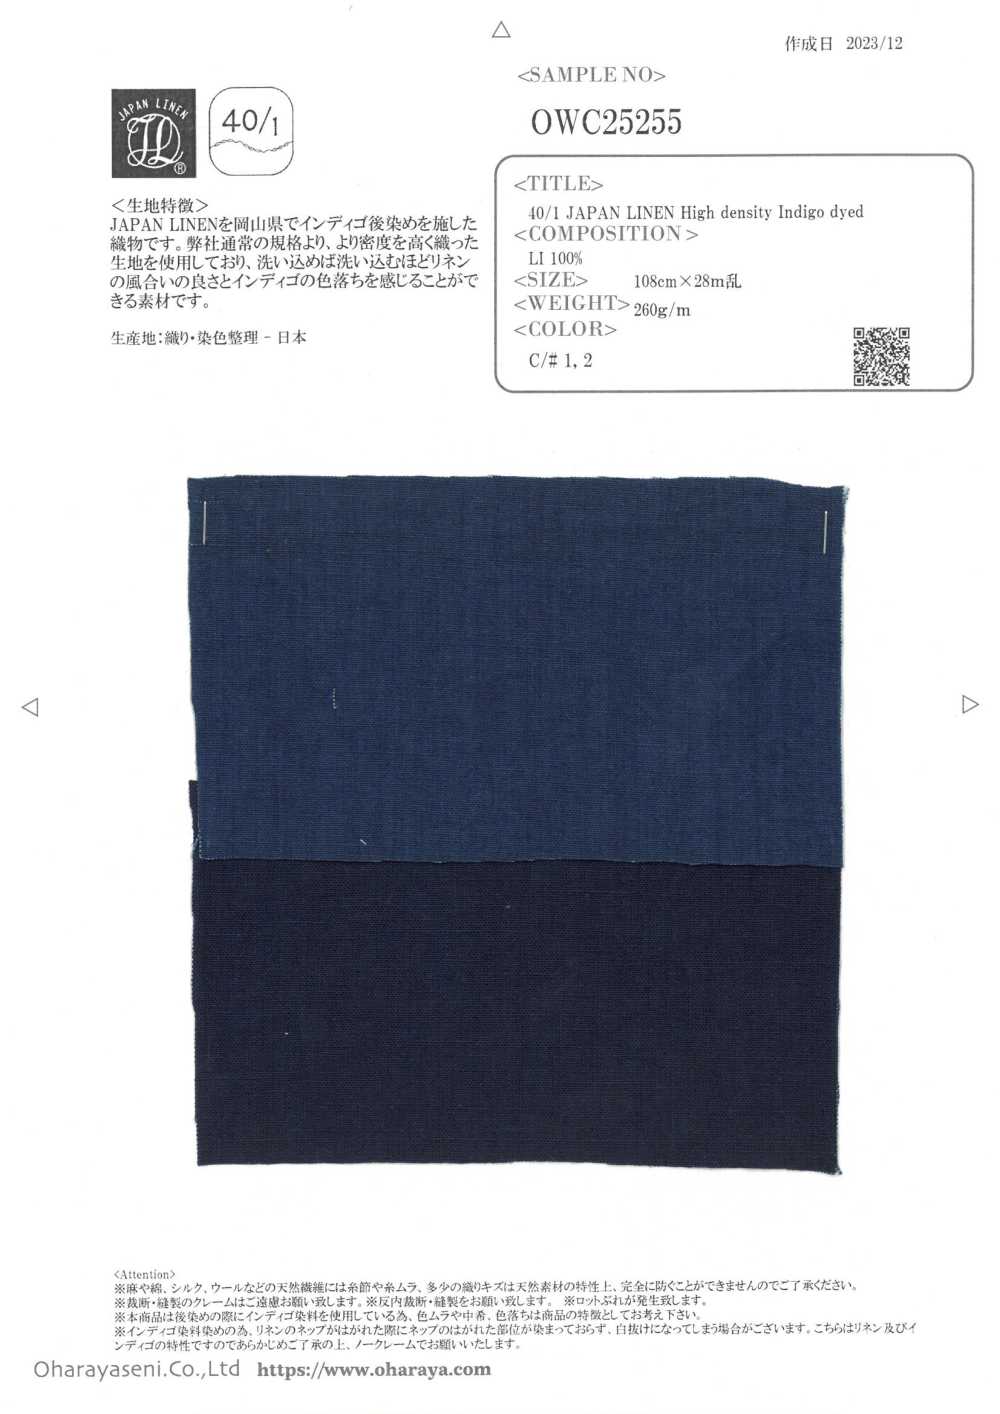 OWC25255 40/1 JAPAN LINEN High Density Indigo Dyed[Textile / Fabric] Oharayaseni